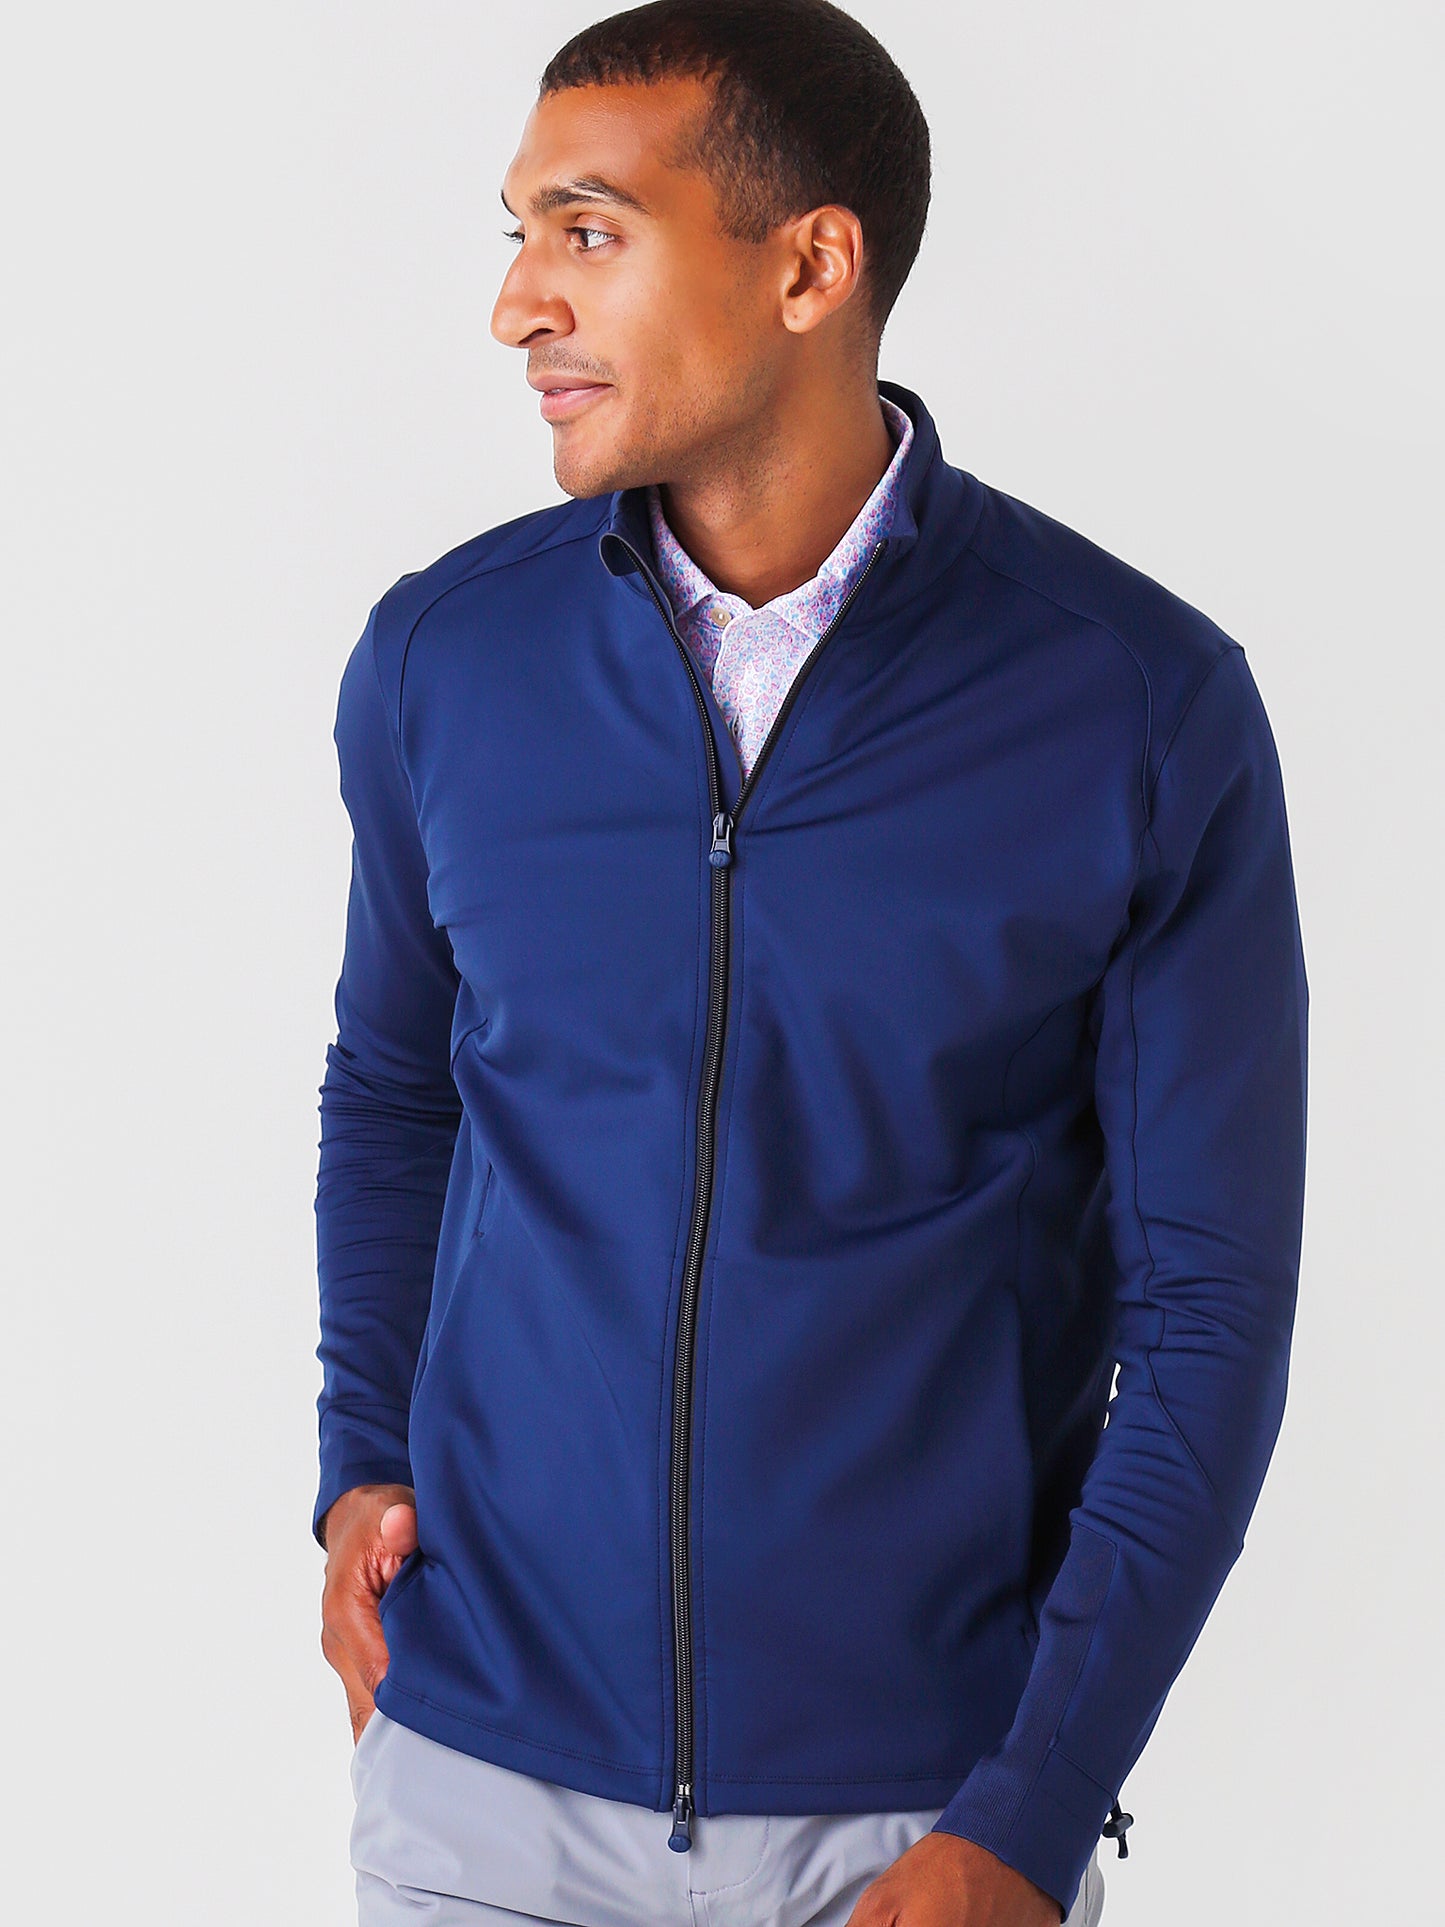 Greyson Men's Sequoia Full-Zip Jacket